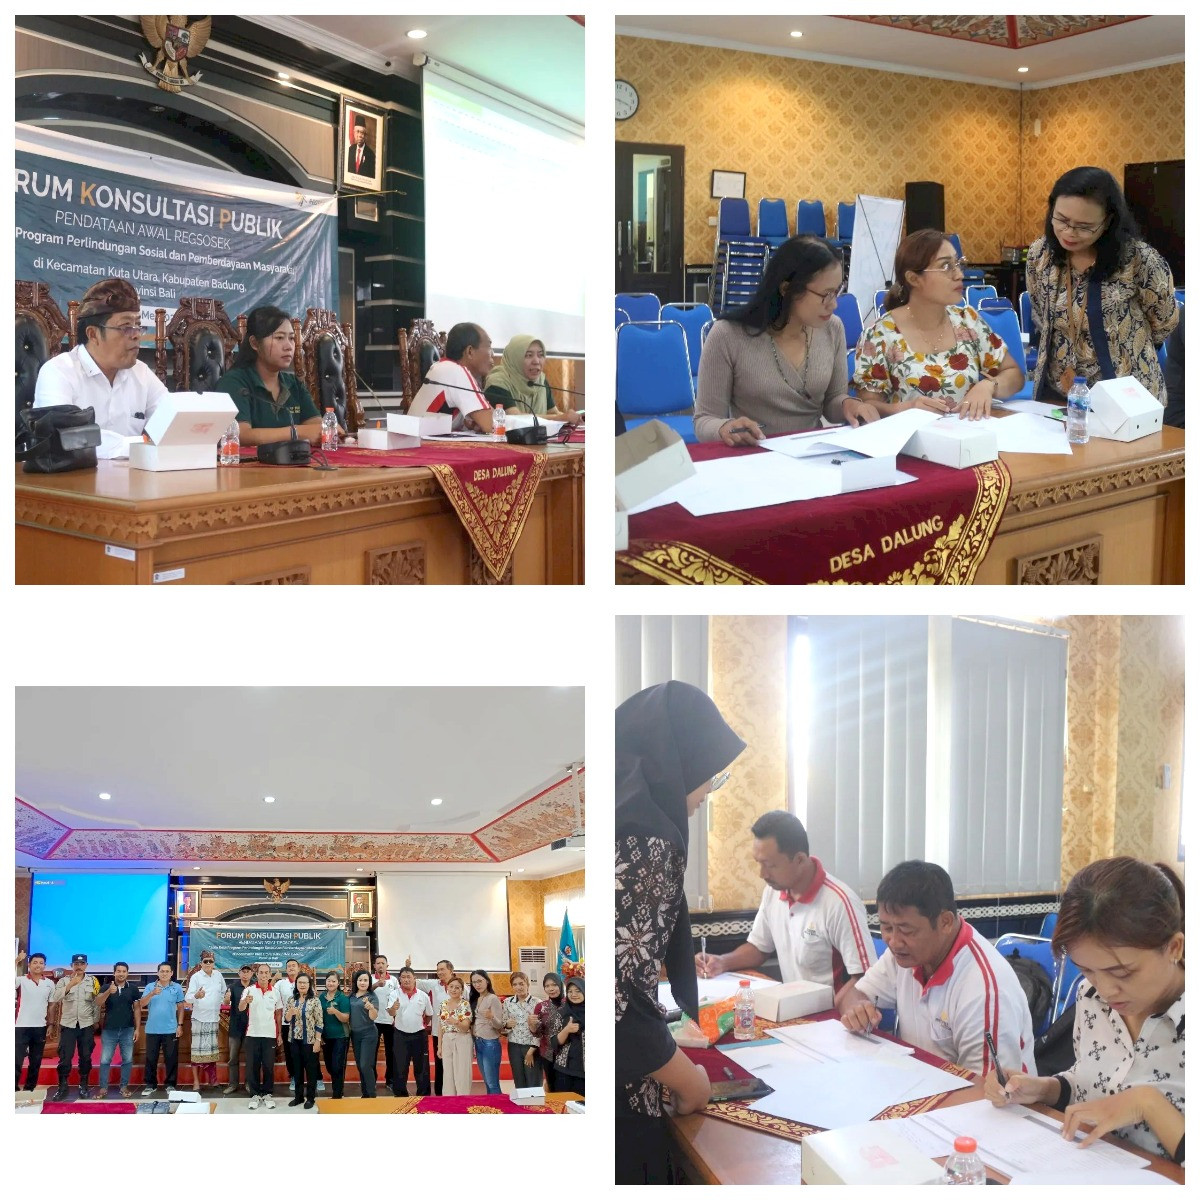 Forum Konsultasi Publik Pendataan Awal Regsosek (Registrasi Sosial Ekonomi) oleh BPS (Badan Pusat Statistik) Kabupaten Badung